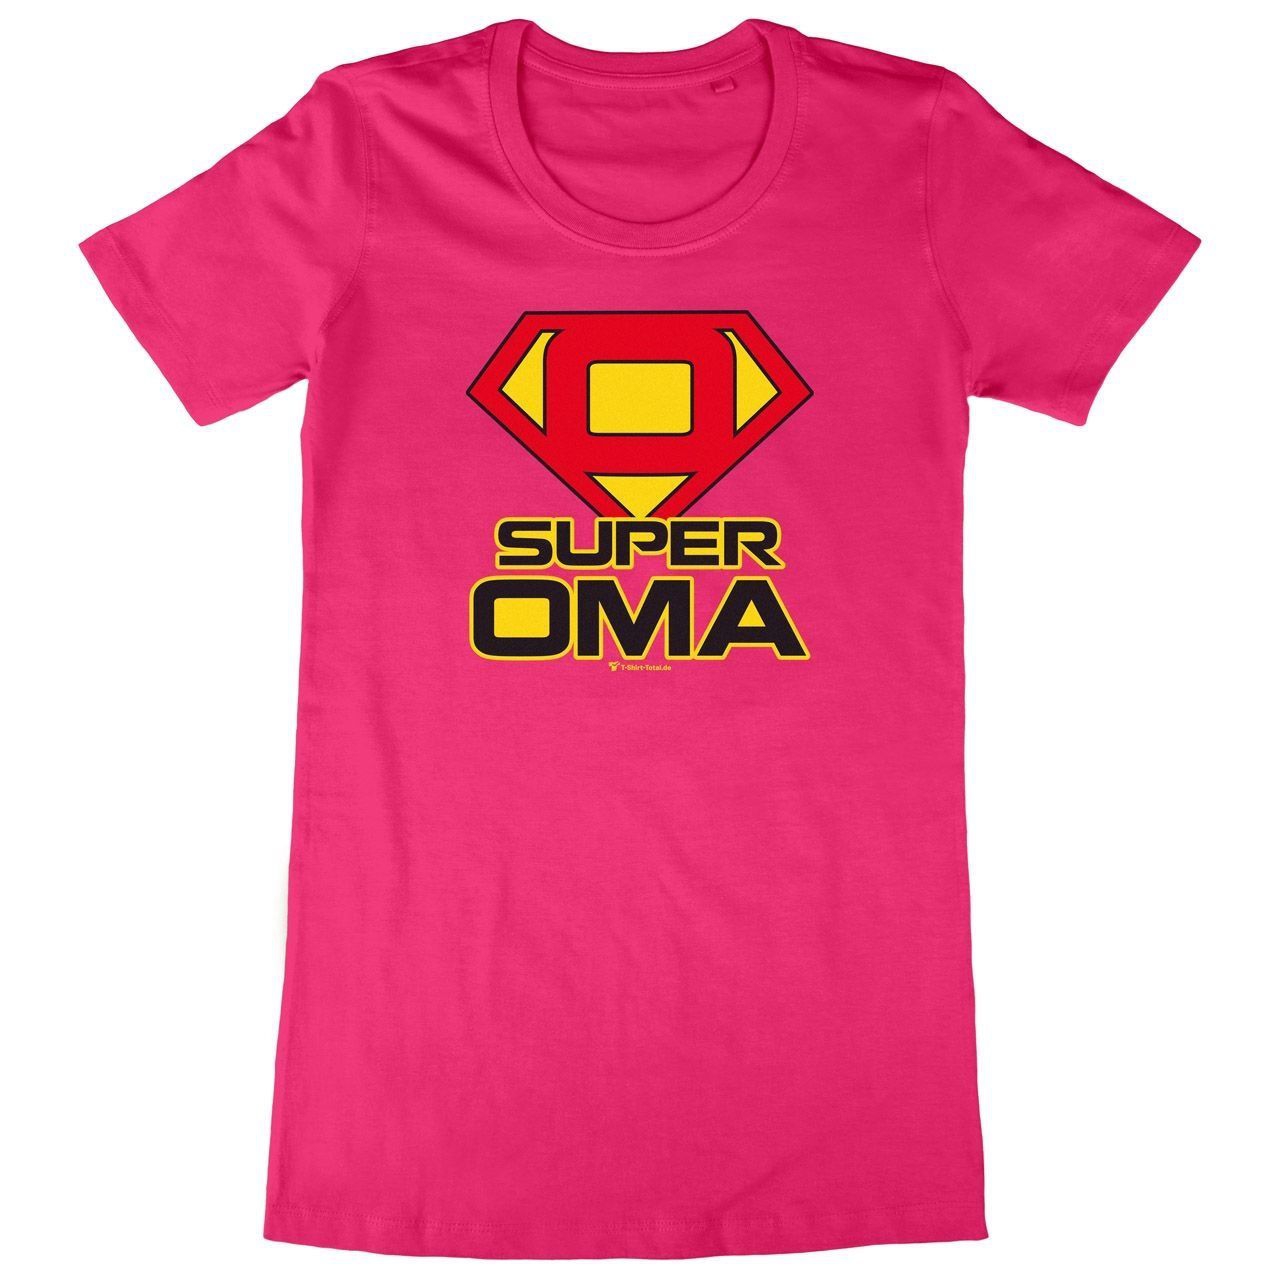 Super Oma Woman Long Shirt pink Small